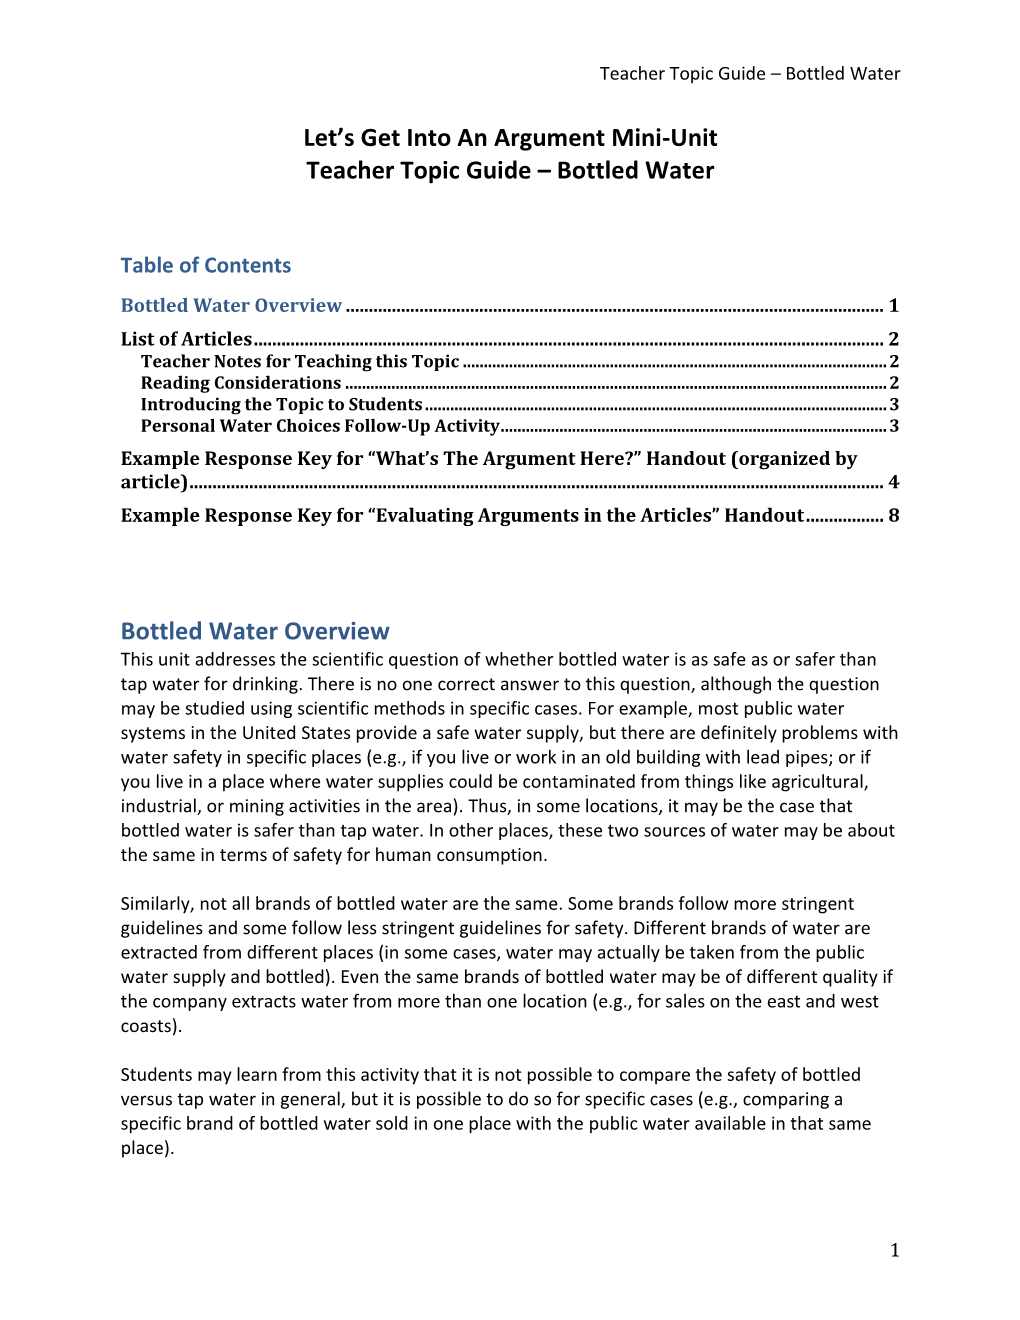 Teacher Topic Guide – Bottled Water 1